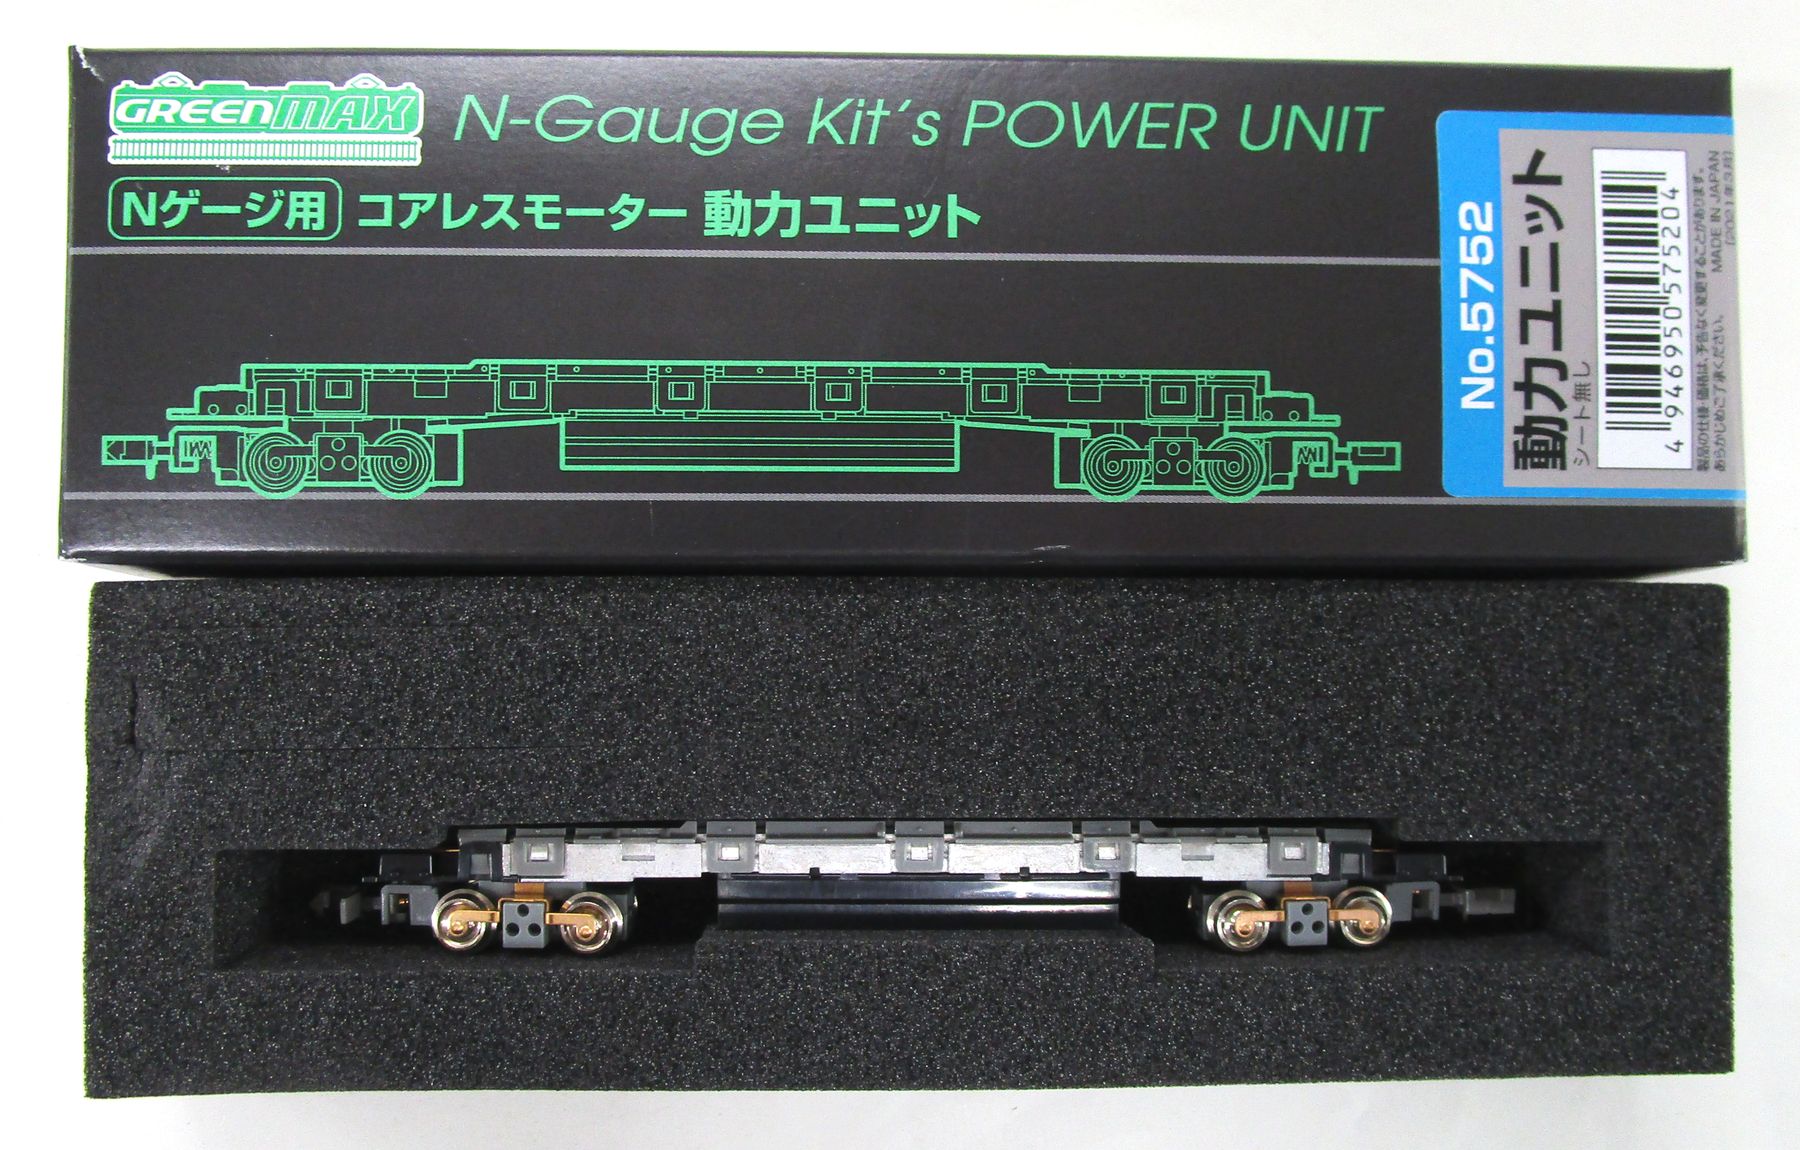 5711 コアレスモーター動力ユニット(20m級A) Nゲージ 鉄道模型 GREENMAX(グリーンマックス)